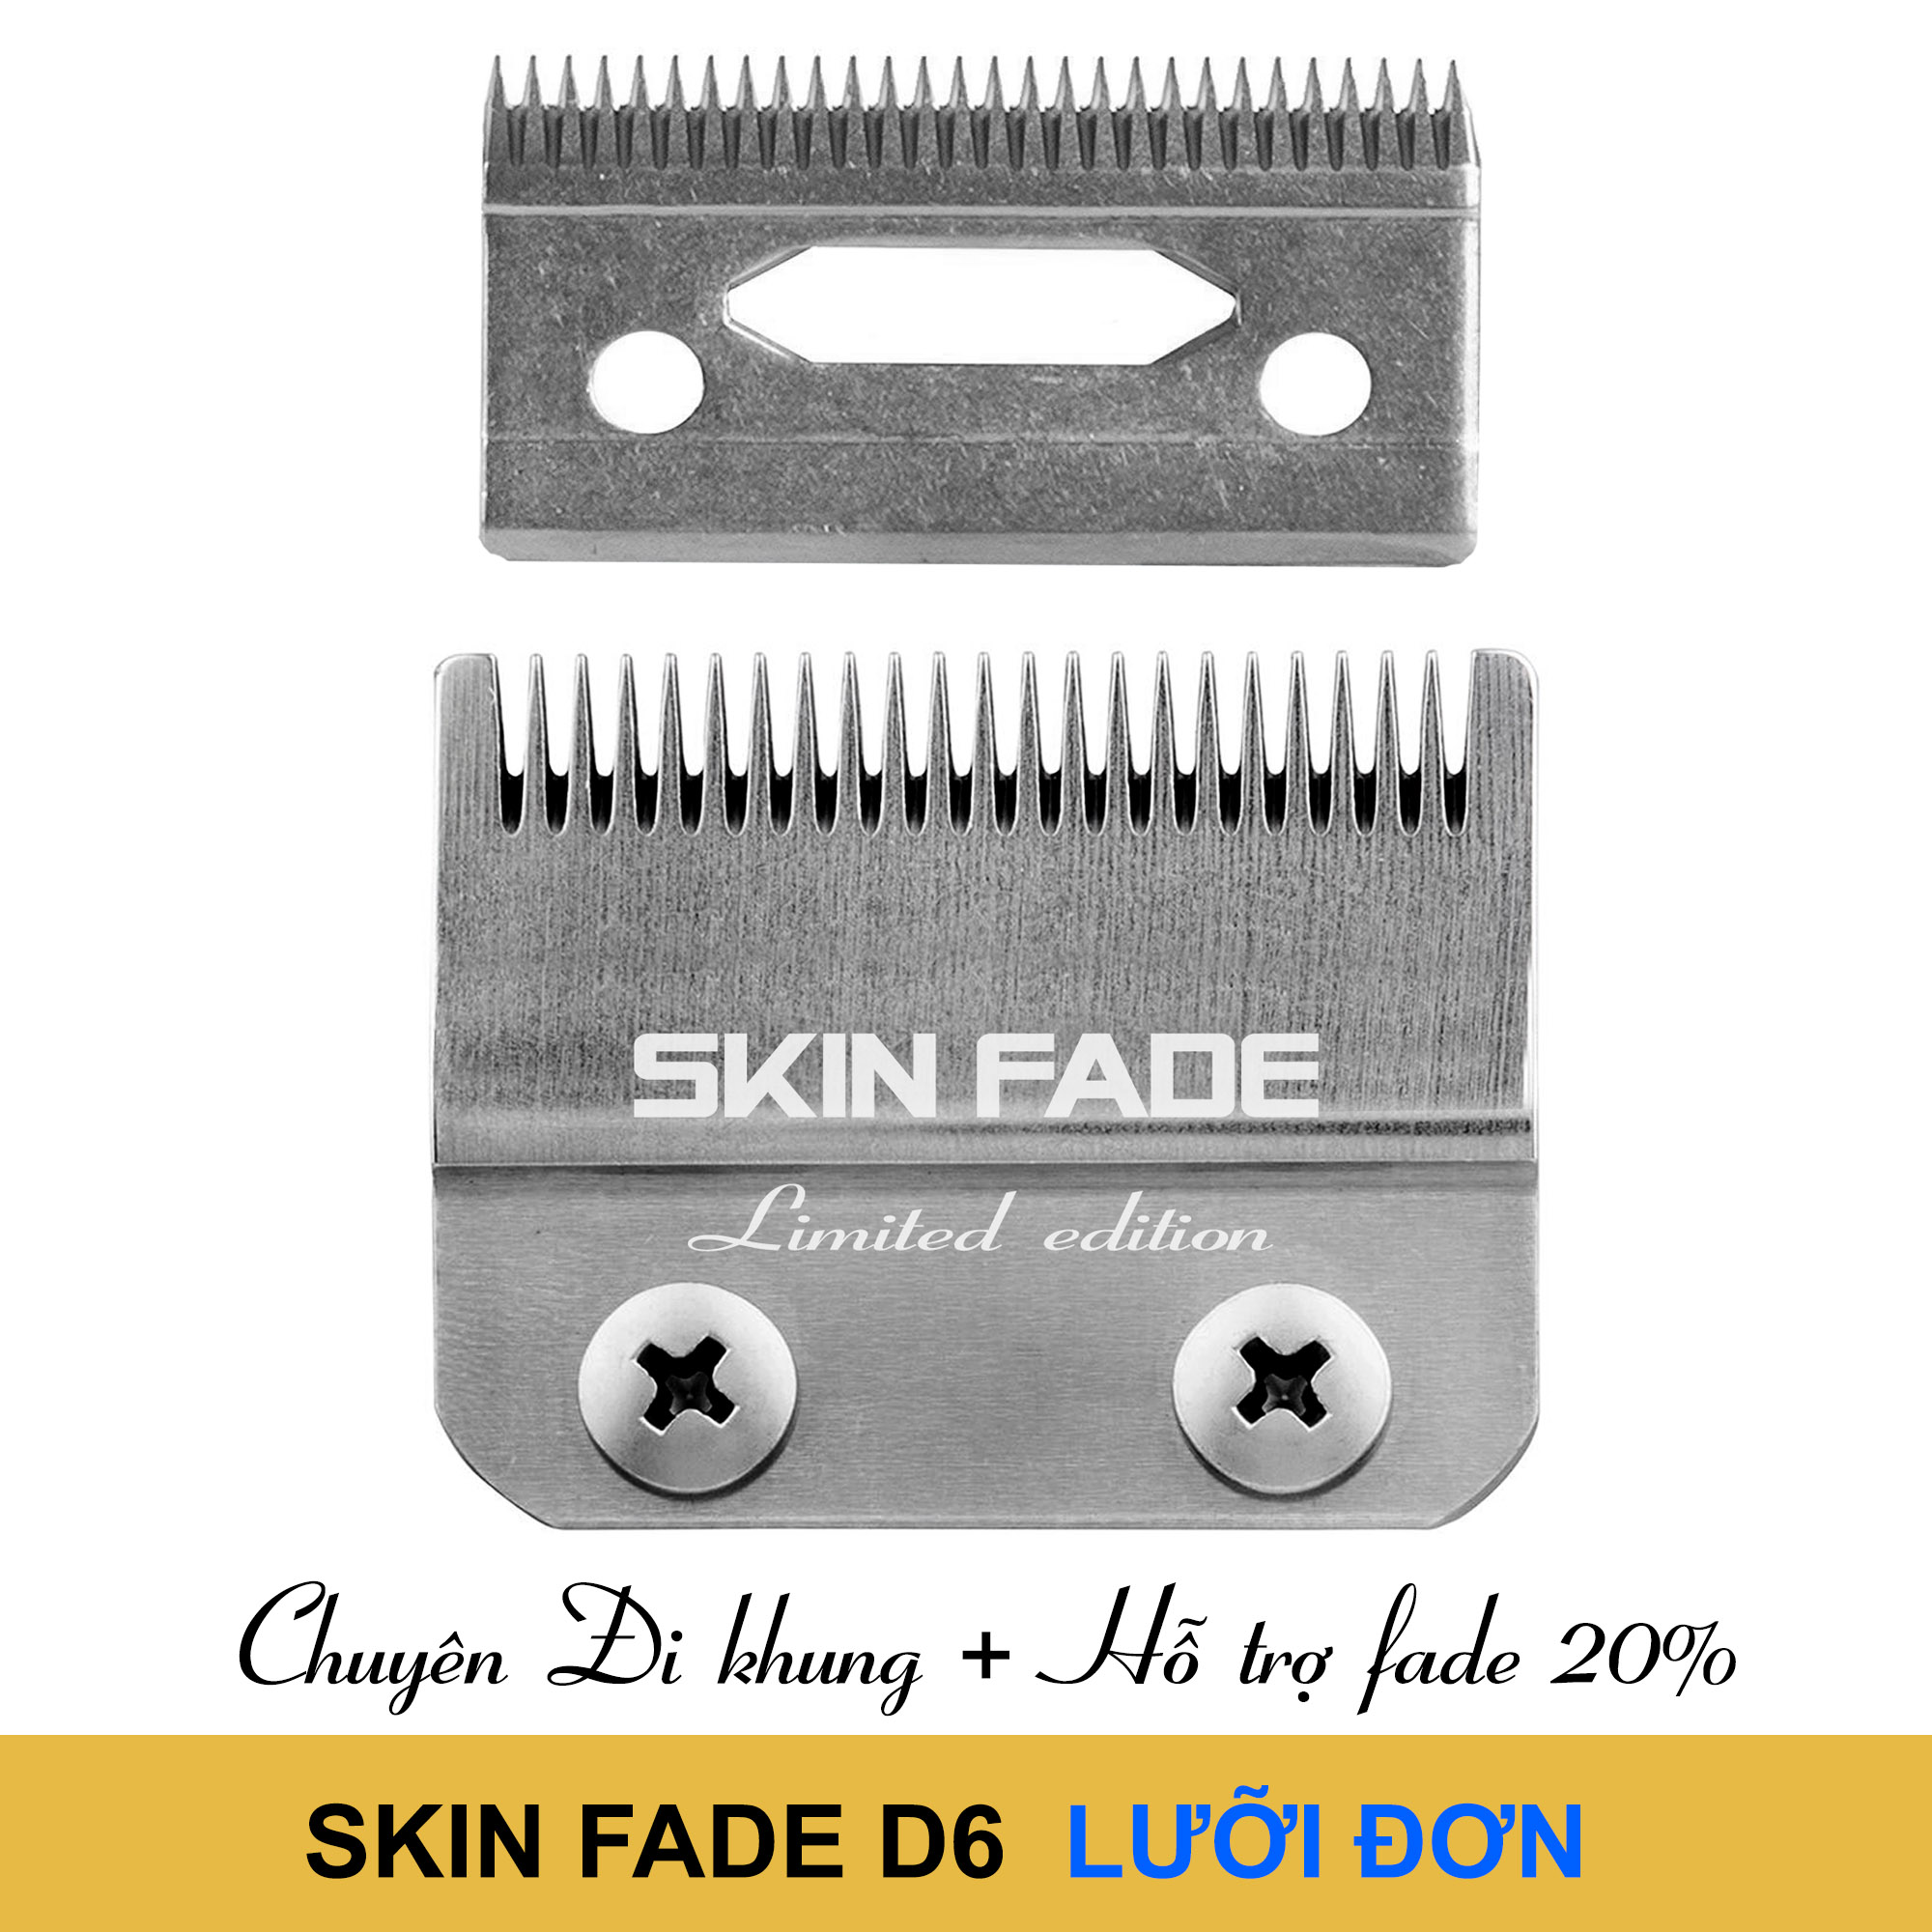 Lưỡi Đơn D6 Chuyên Đi Khung Chính hãng Skin Fade